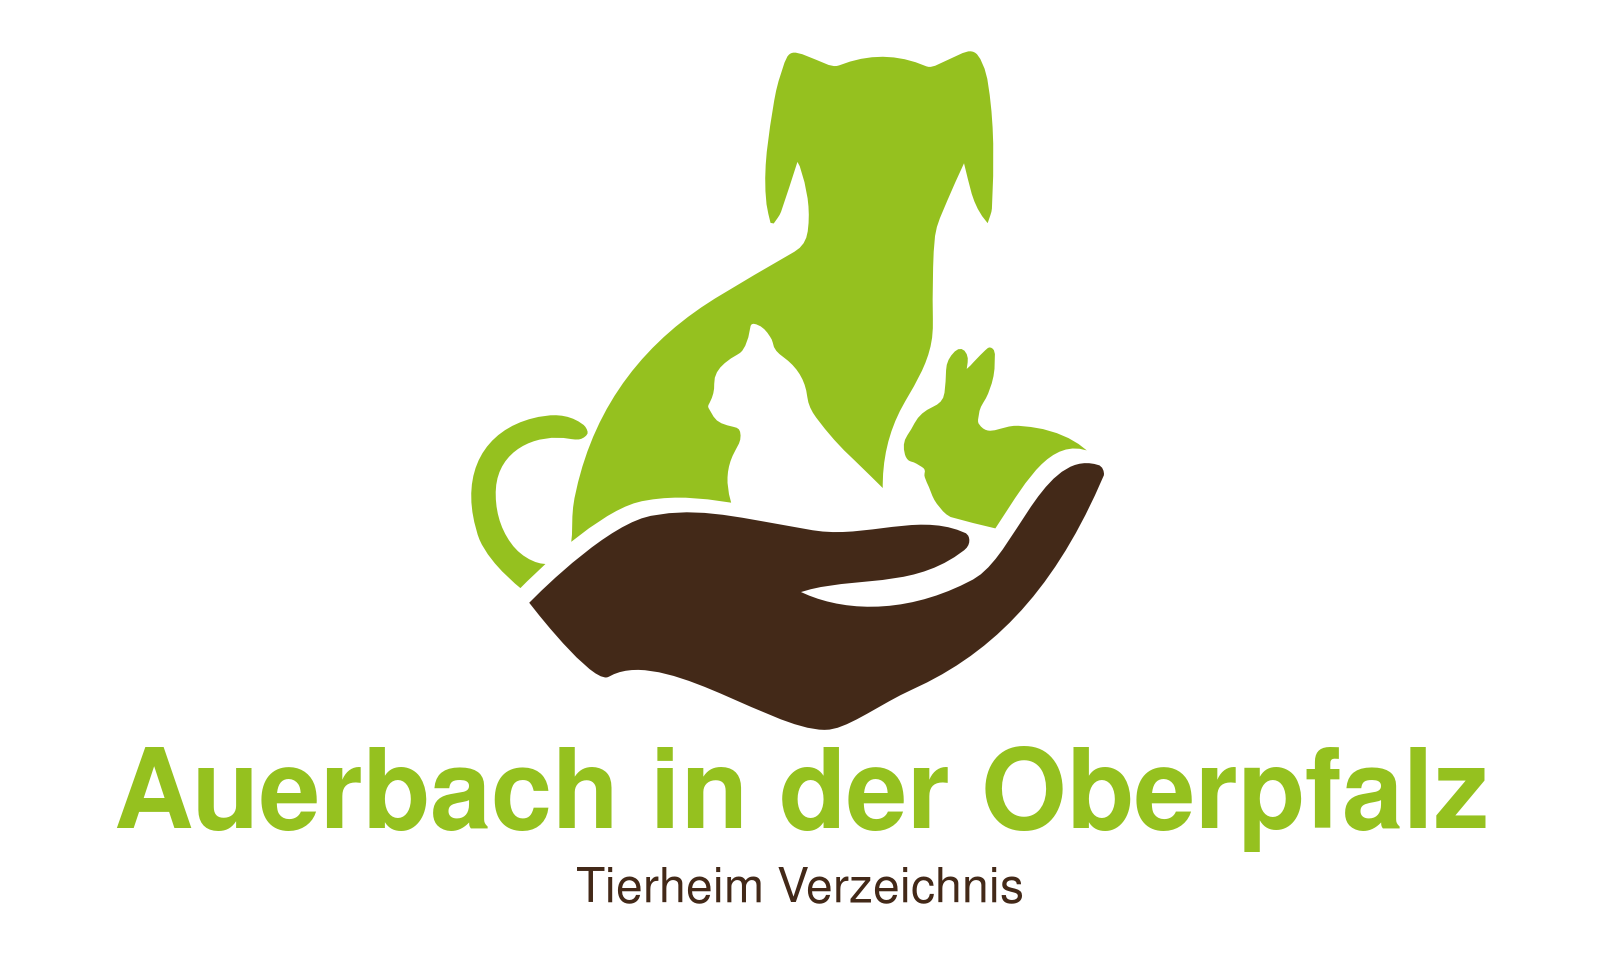 Tierheim Auerbach in der Oberpfalz